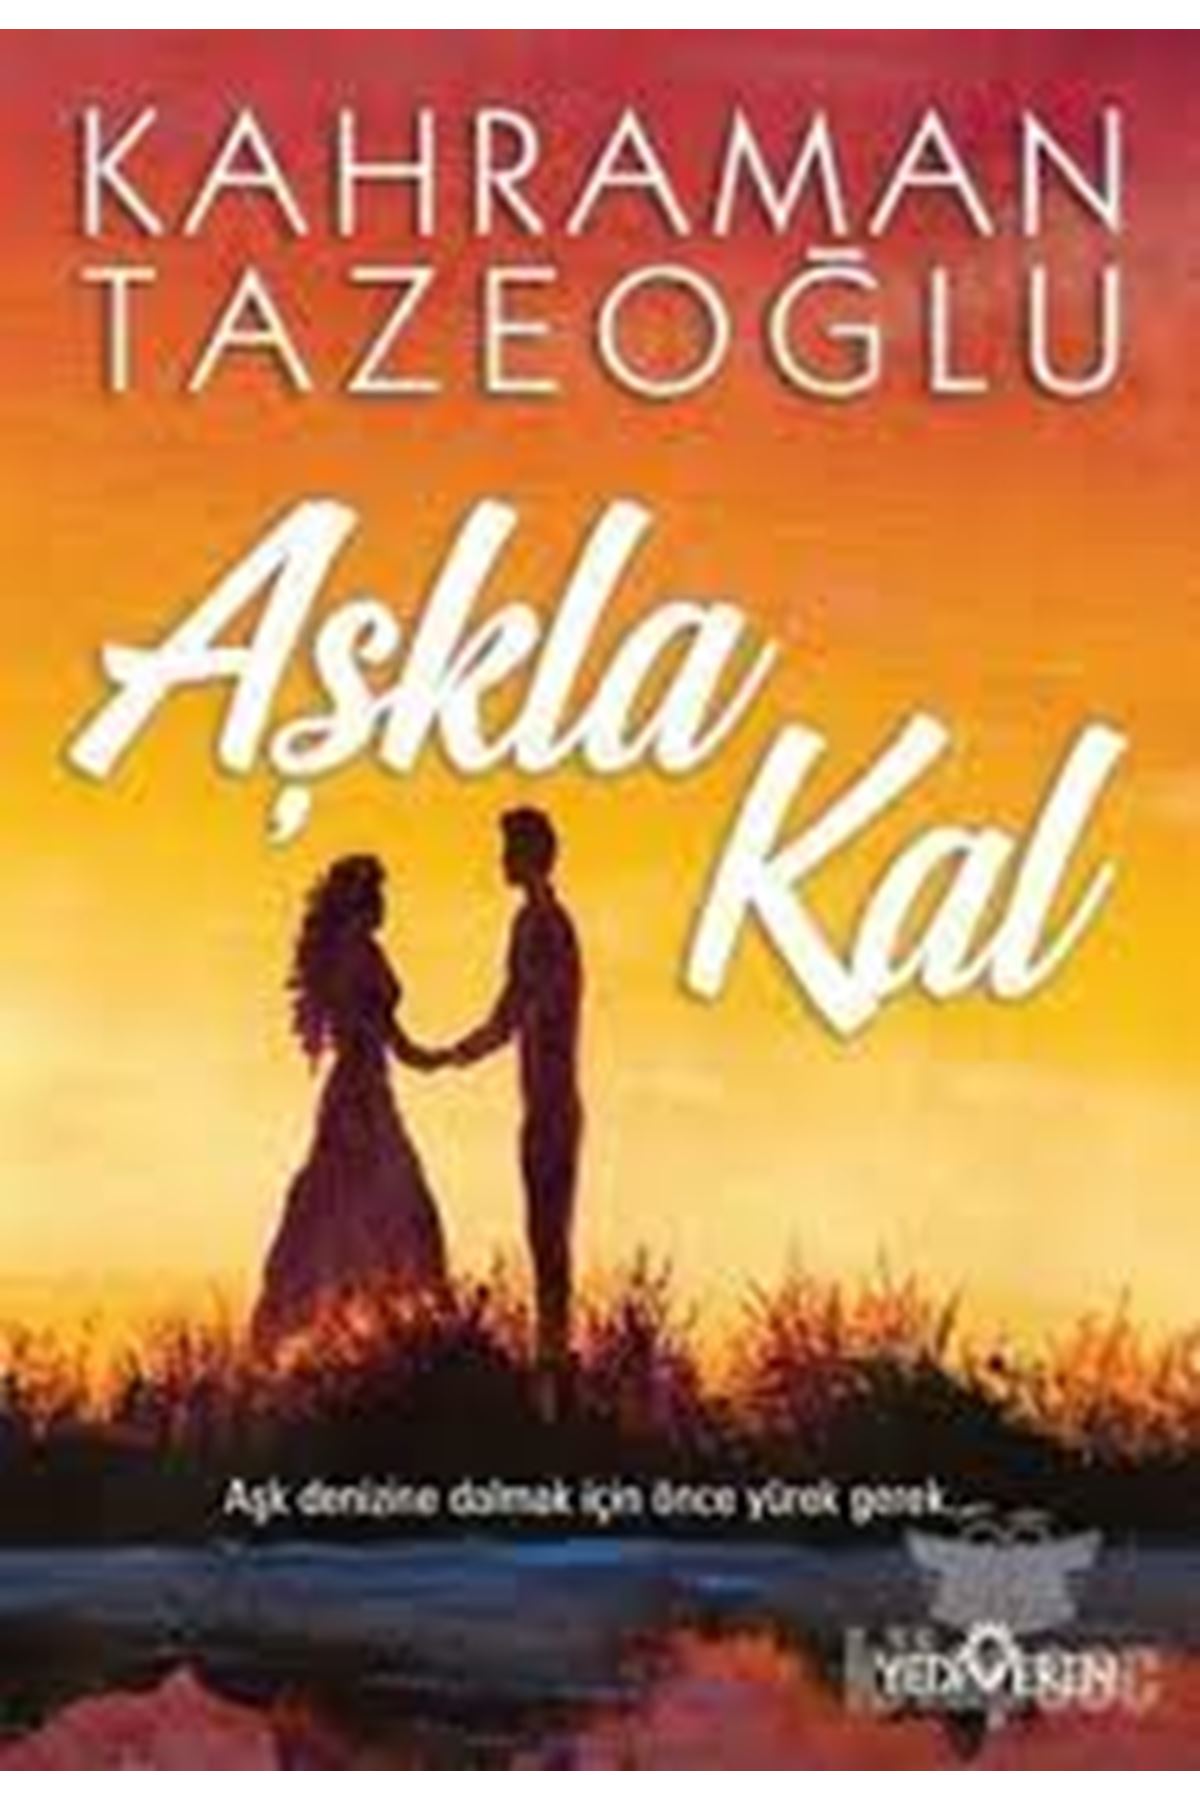 Karaman Tazeoğlu - Aşkla Kal